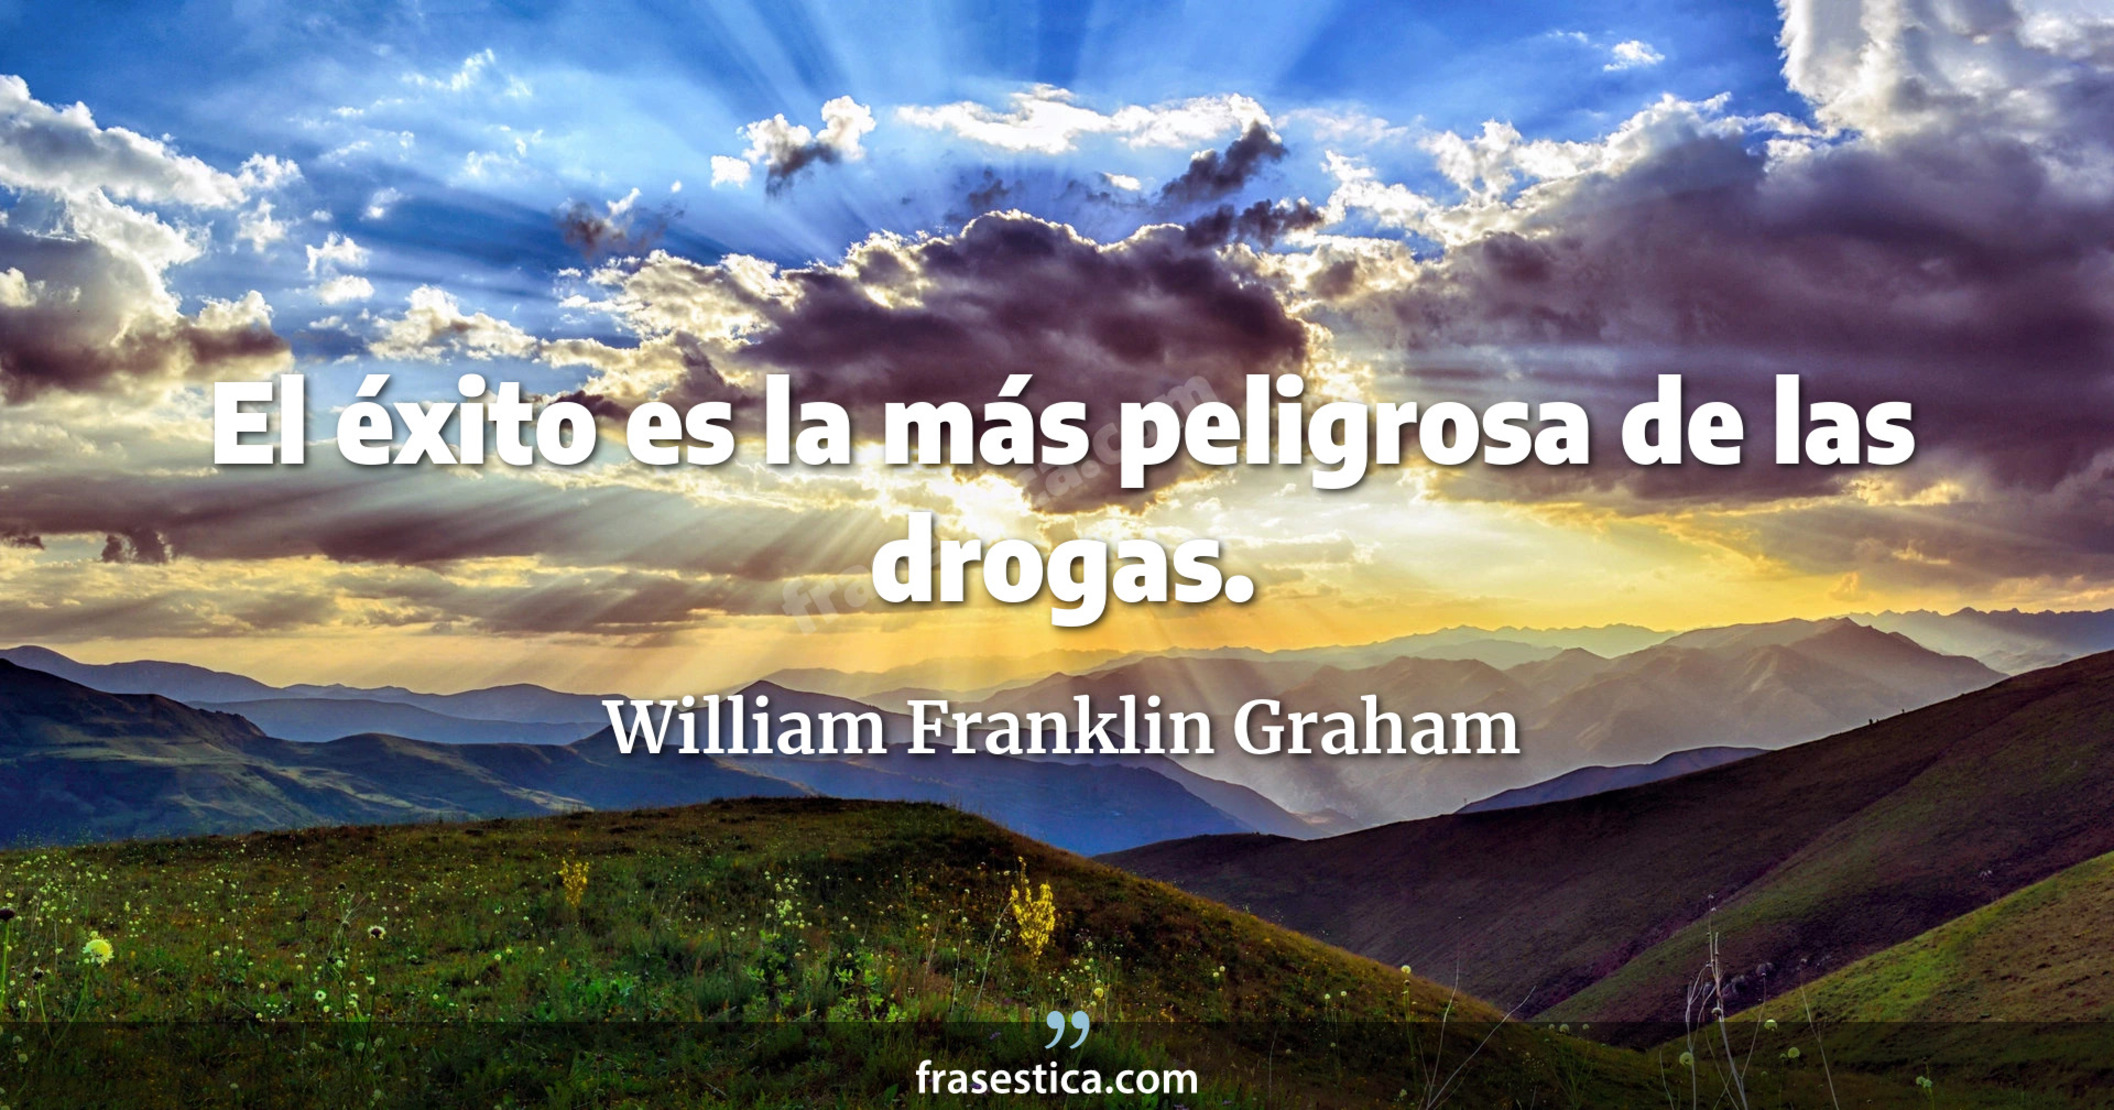 El éxito es la más peligrosa de las drogas. - William Franklin Graham